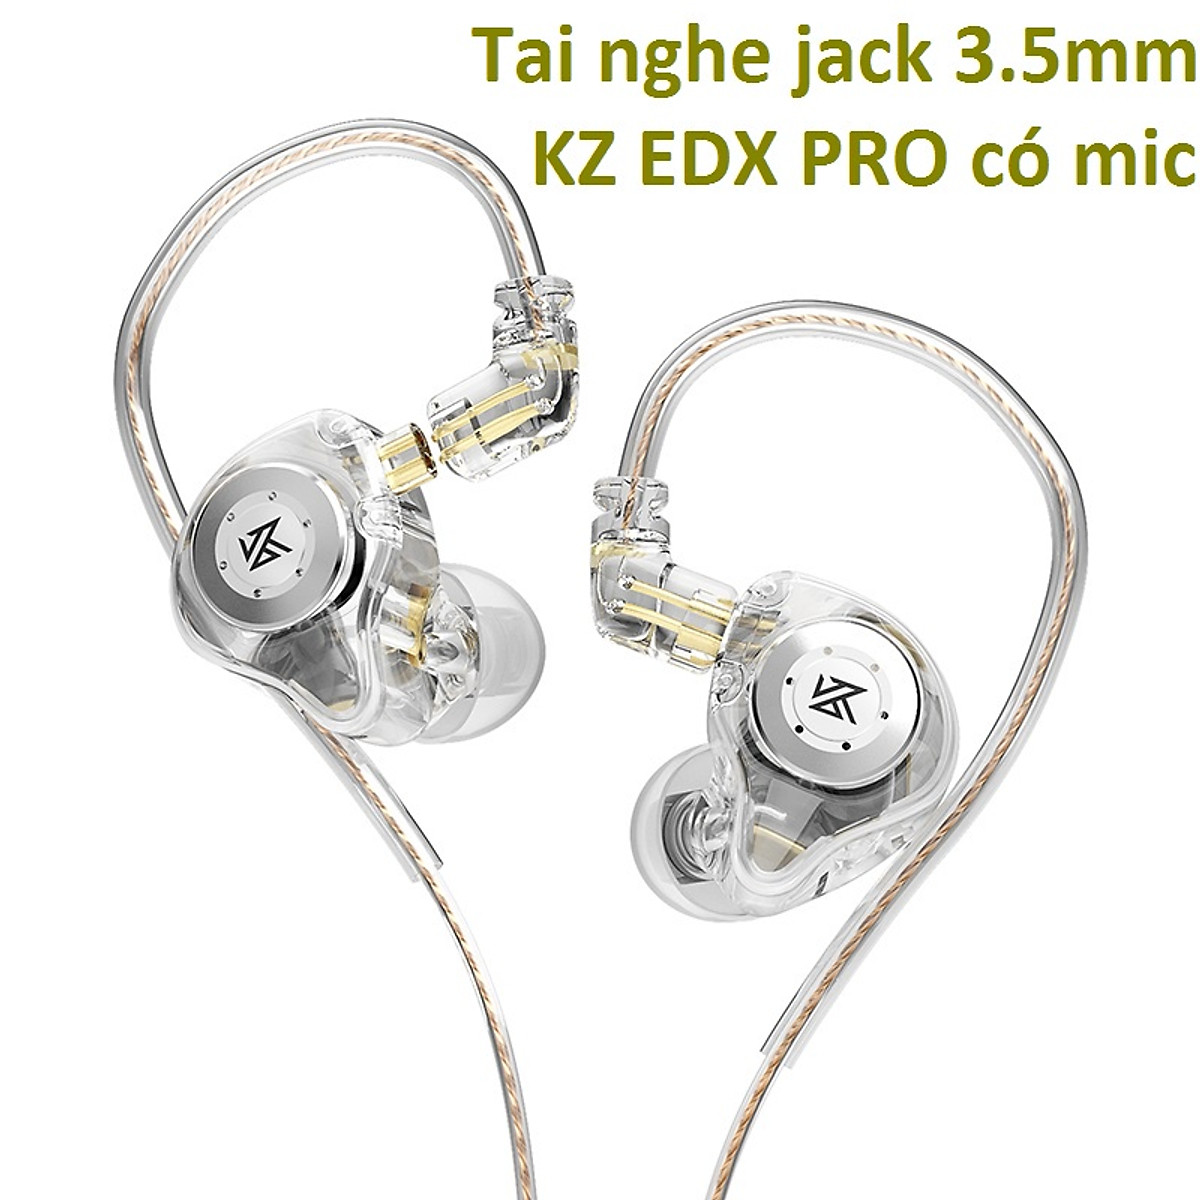 Tai nghe chân cắm 3.5mm có mic KZ EDX PRO - Hàng chính hãng